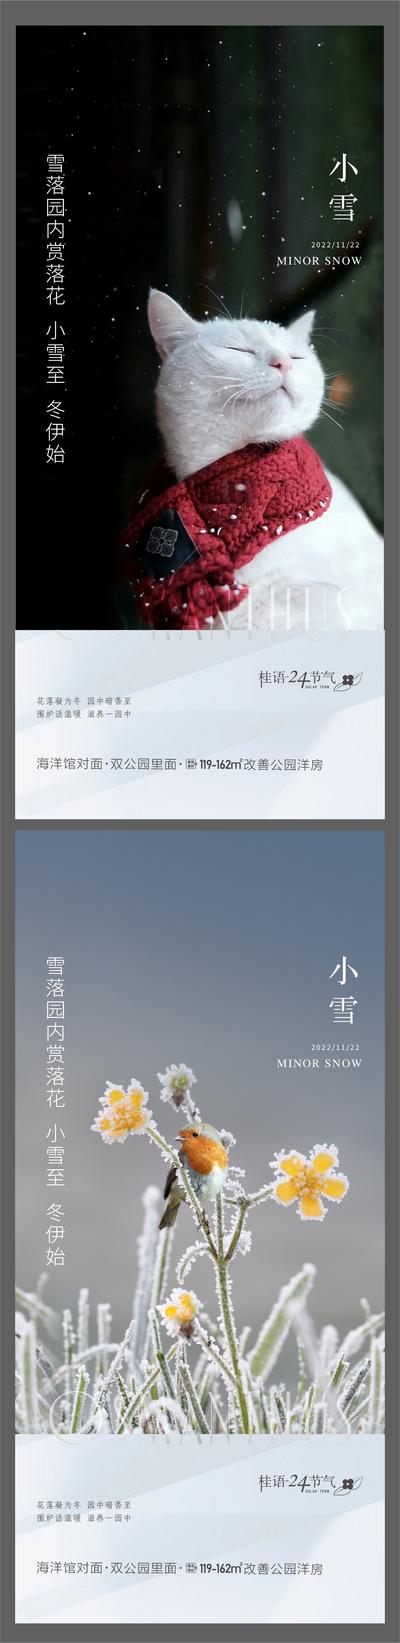 【南门网】广告 海报 节气 小雪 大雪 猫咪 系列 清新